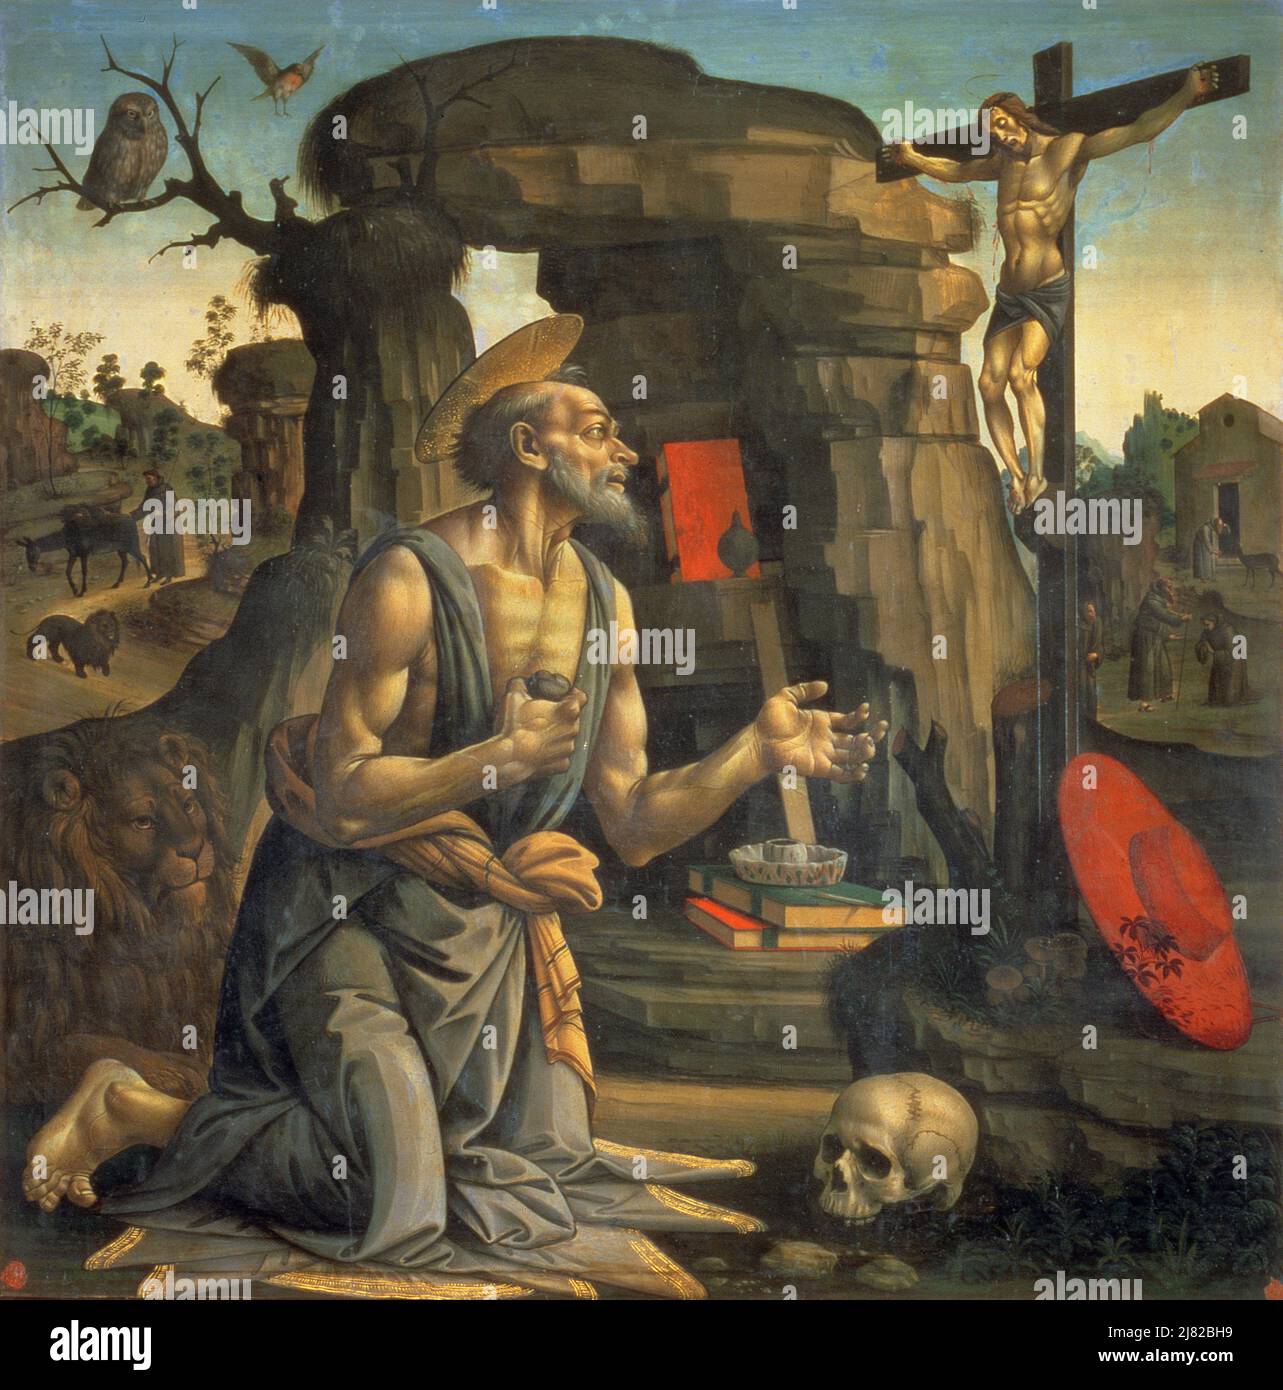 Konzert (Öl auf Leinwand) von Honthorst, Gerrit van (1590-1656); Galleria Borghese, Rom, Latium, Italien; Niederländisch, urheberrechtlich geschützt. Stockfoto